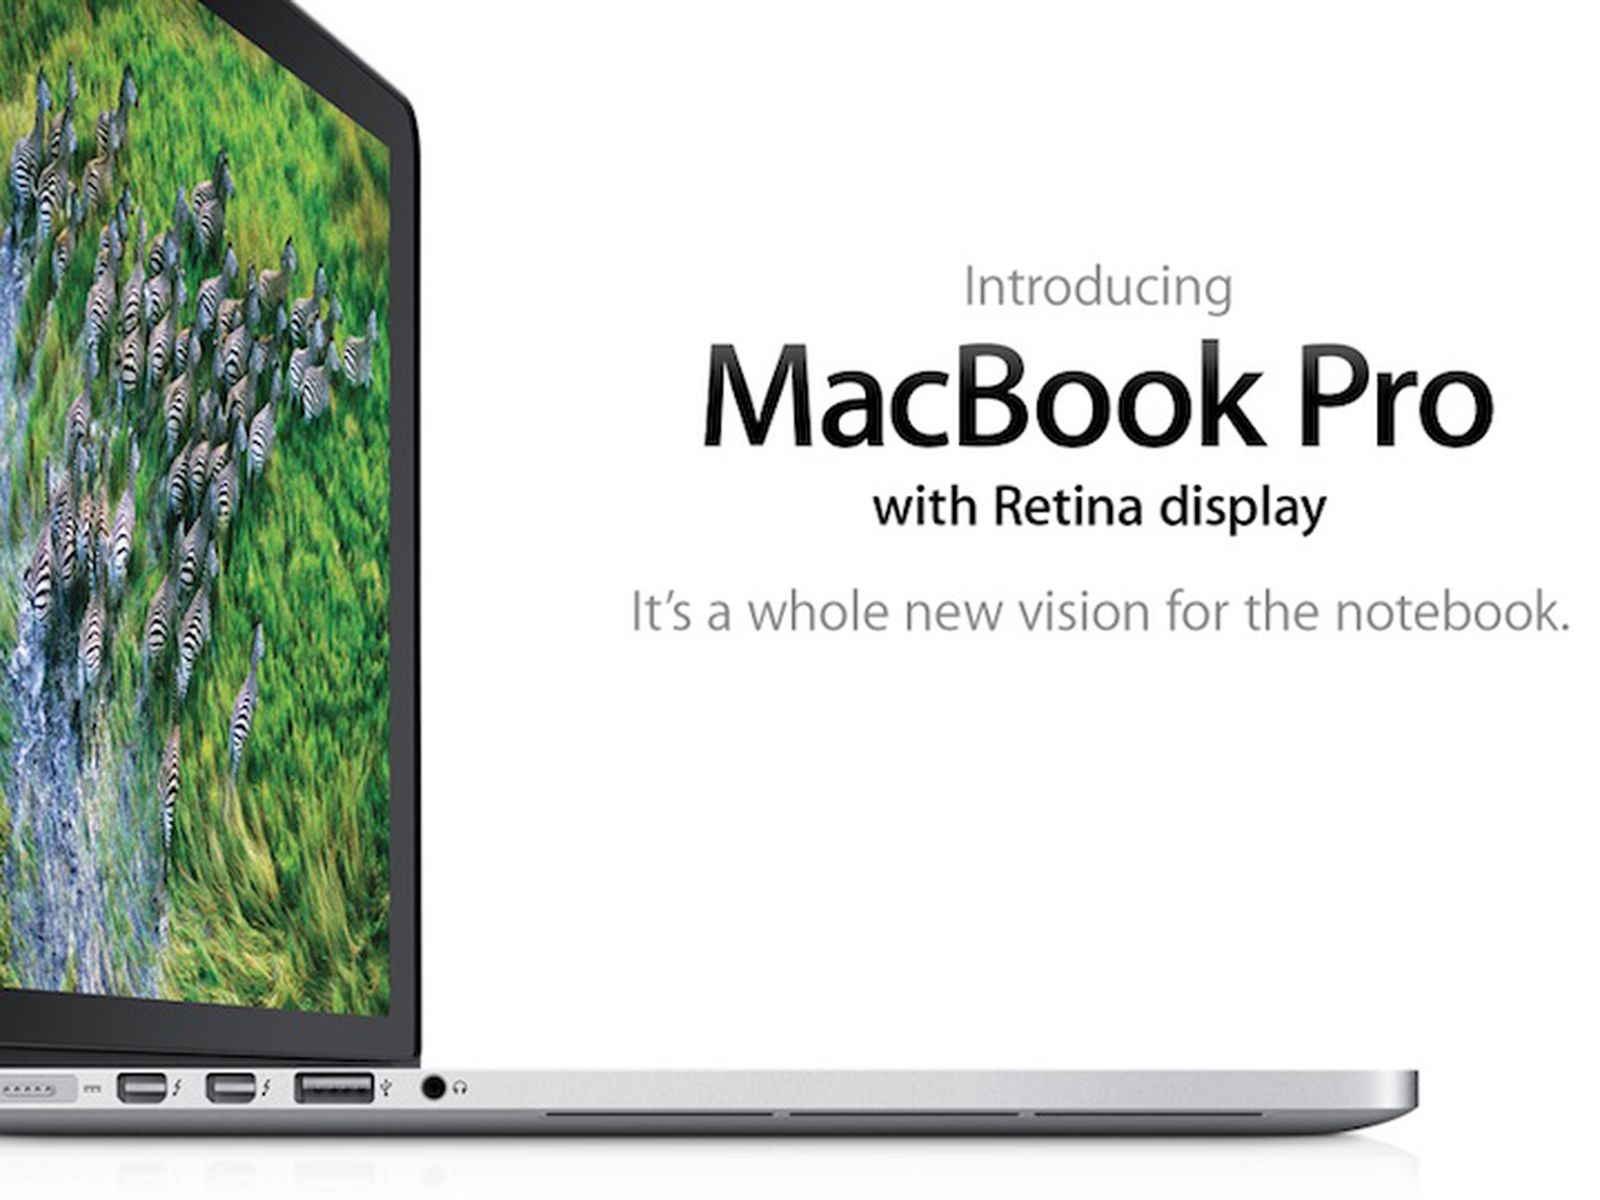 4k display macbook pro retina 2012 frozen soundtrack